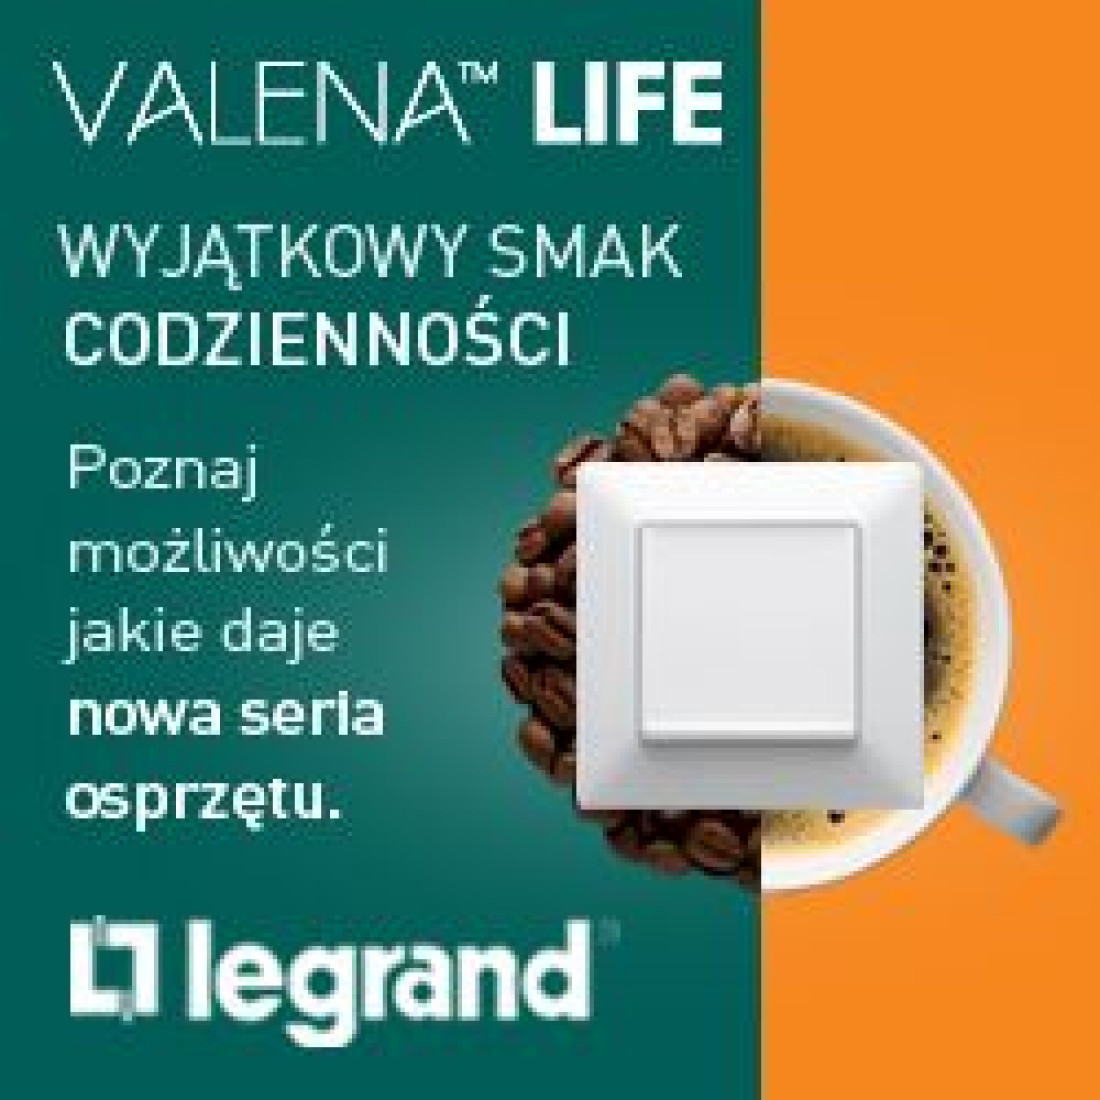 Legrand Valena Life wprowadza nowy styl i innowacyjne rozwiązania